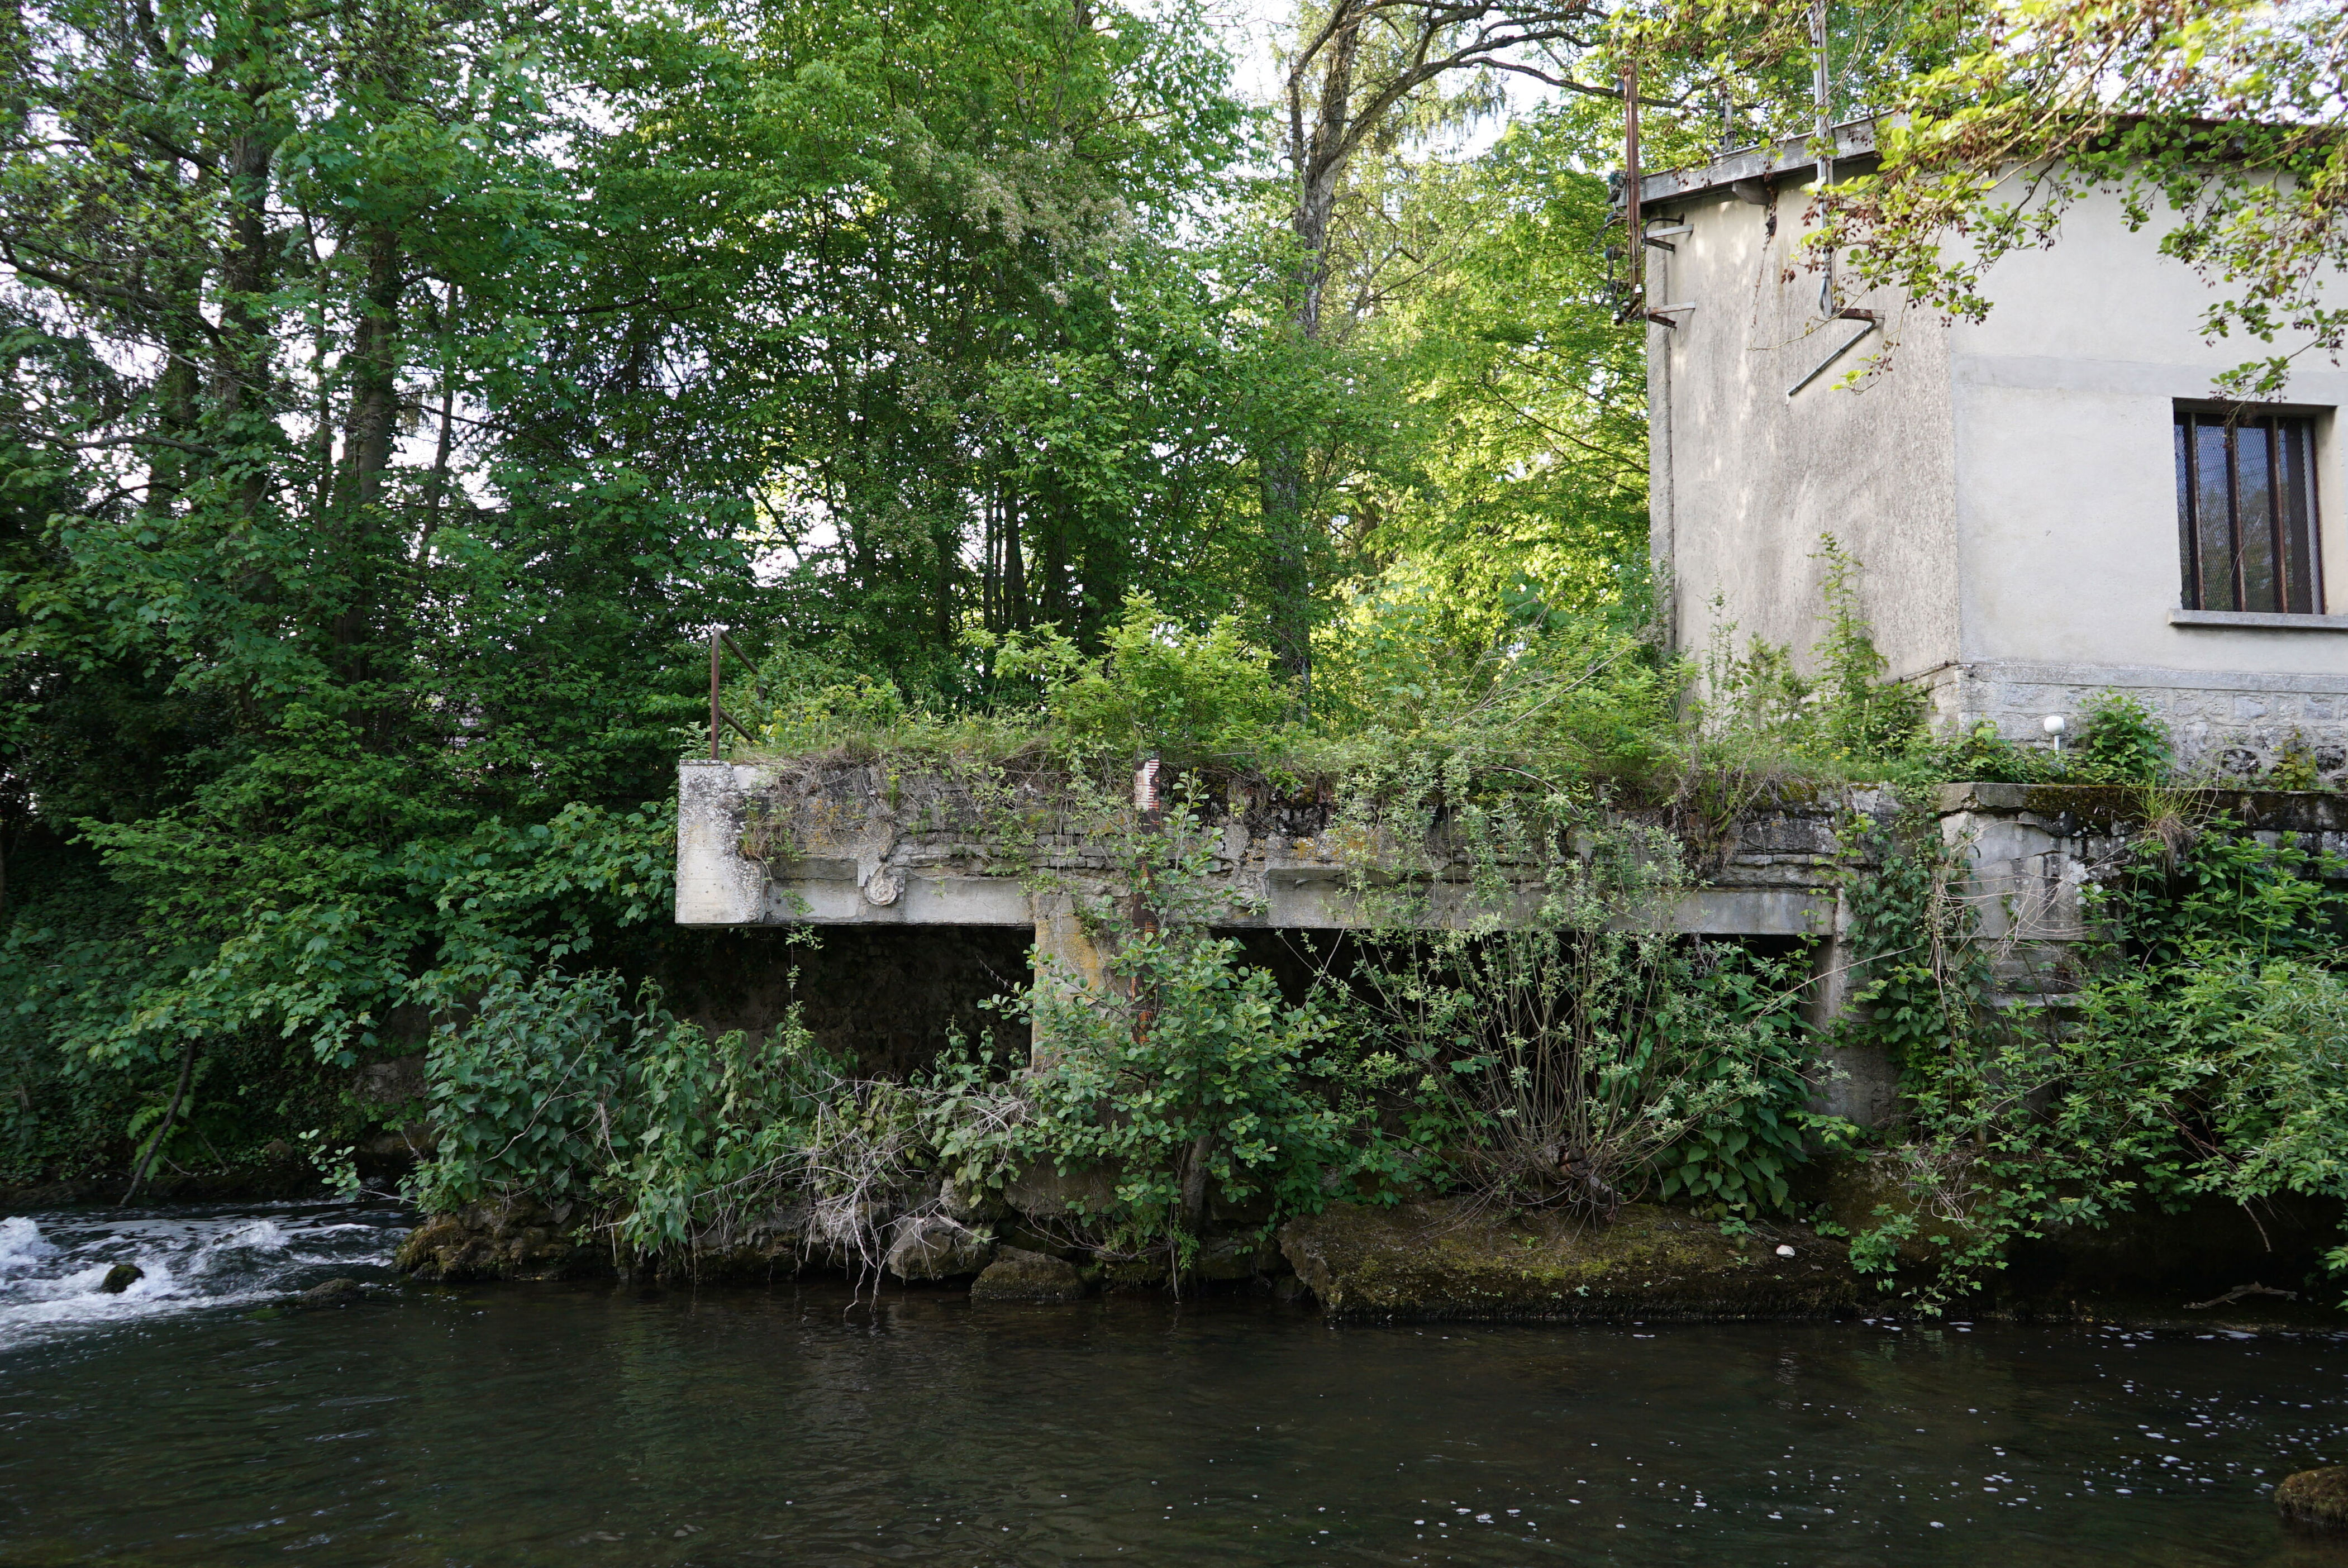 un groupe de hackeurs russes se vante d’attaquer un barrage français mais frappe en réalité un ancien moulin à eau